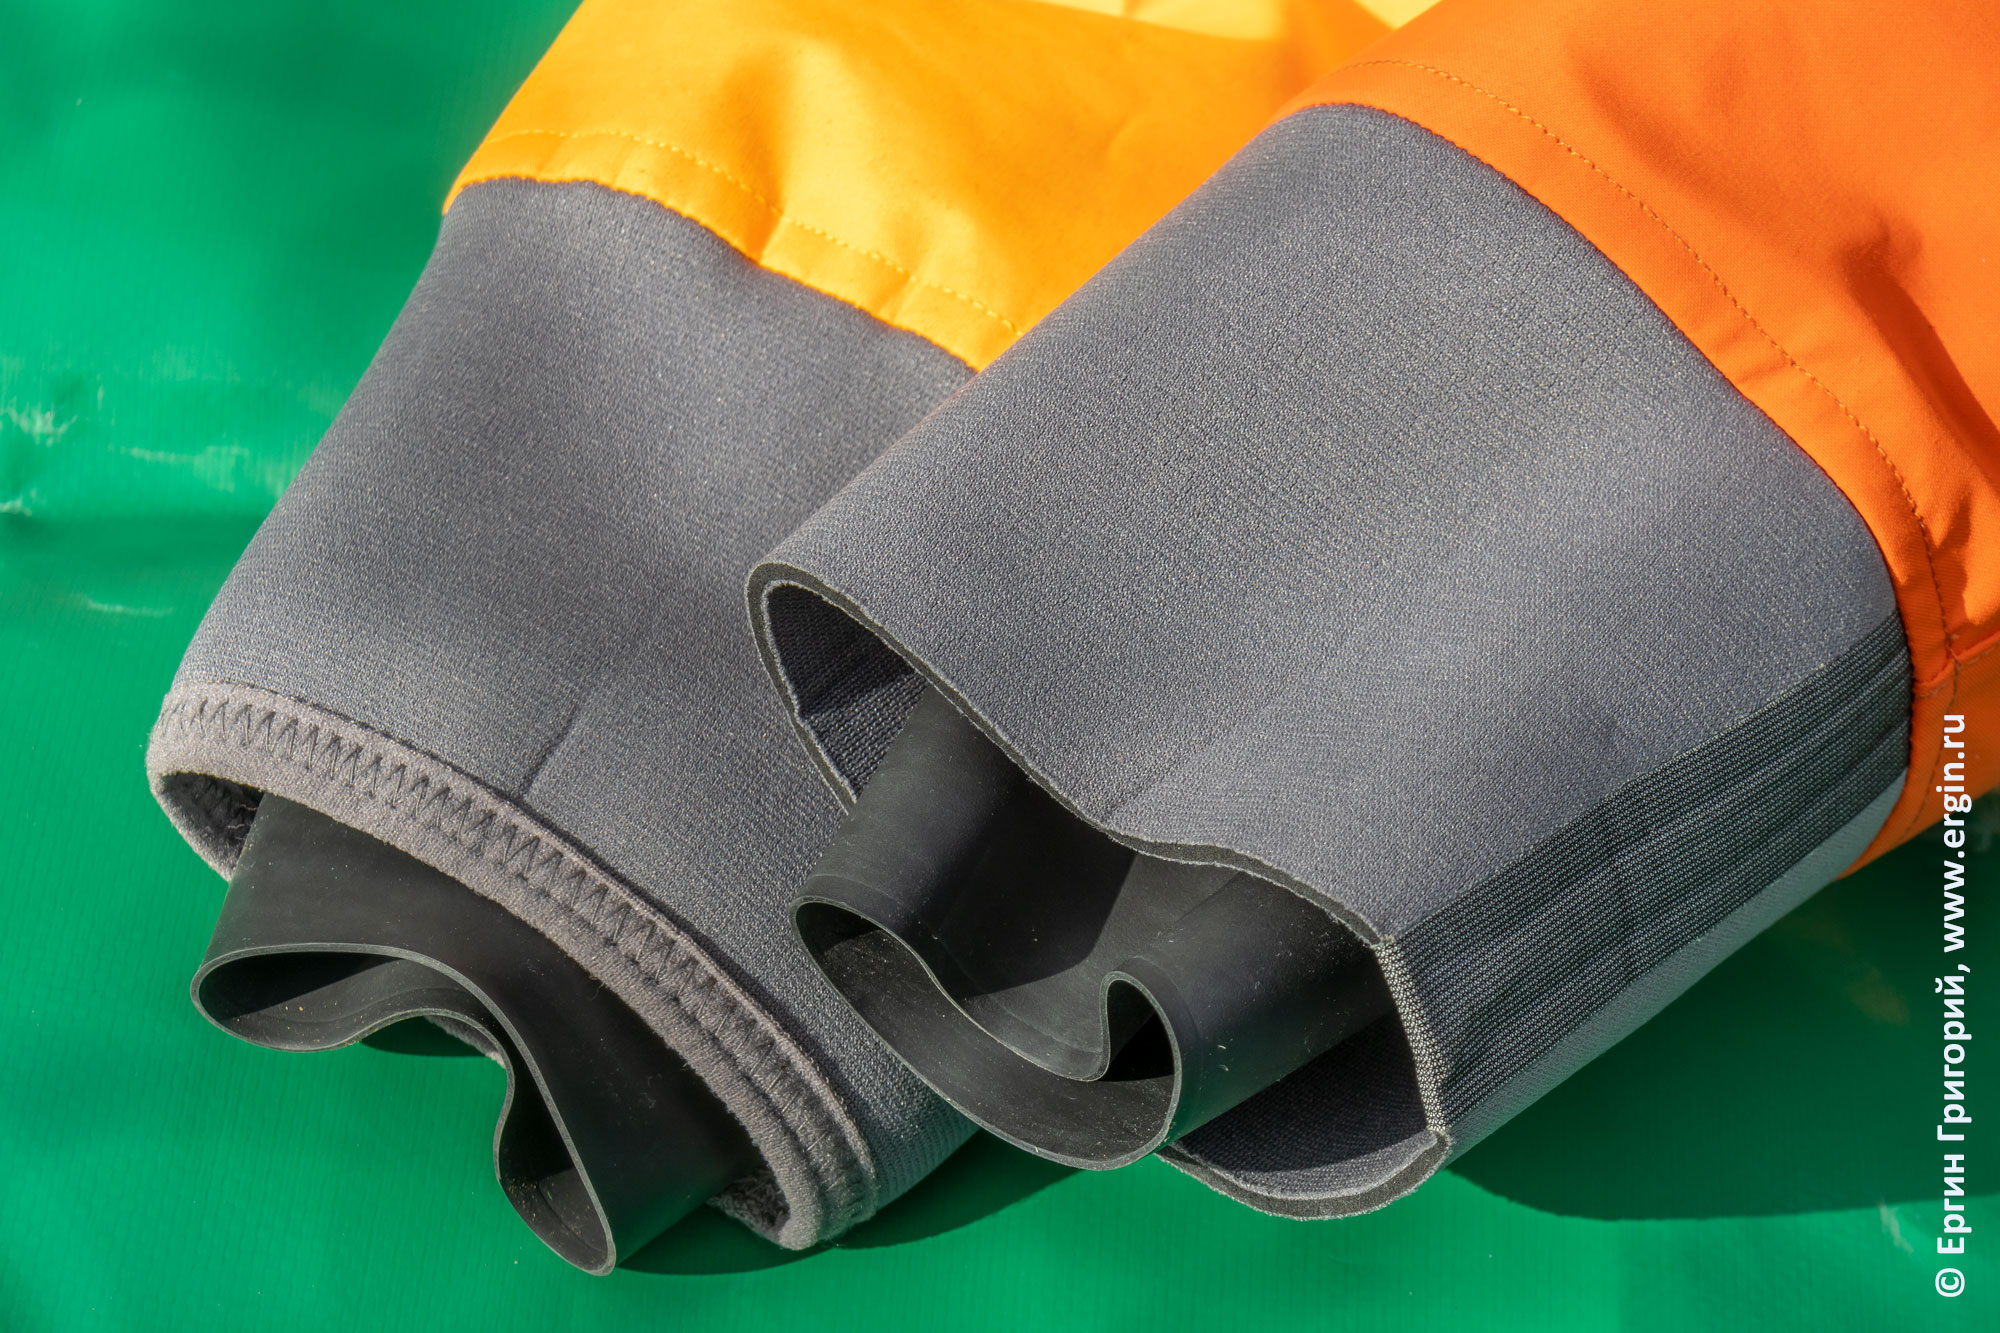 Окантовка рукавов сухих курток для каякинга фирмы "LKVER" разных сроков выпуска